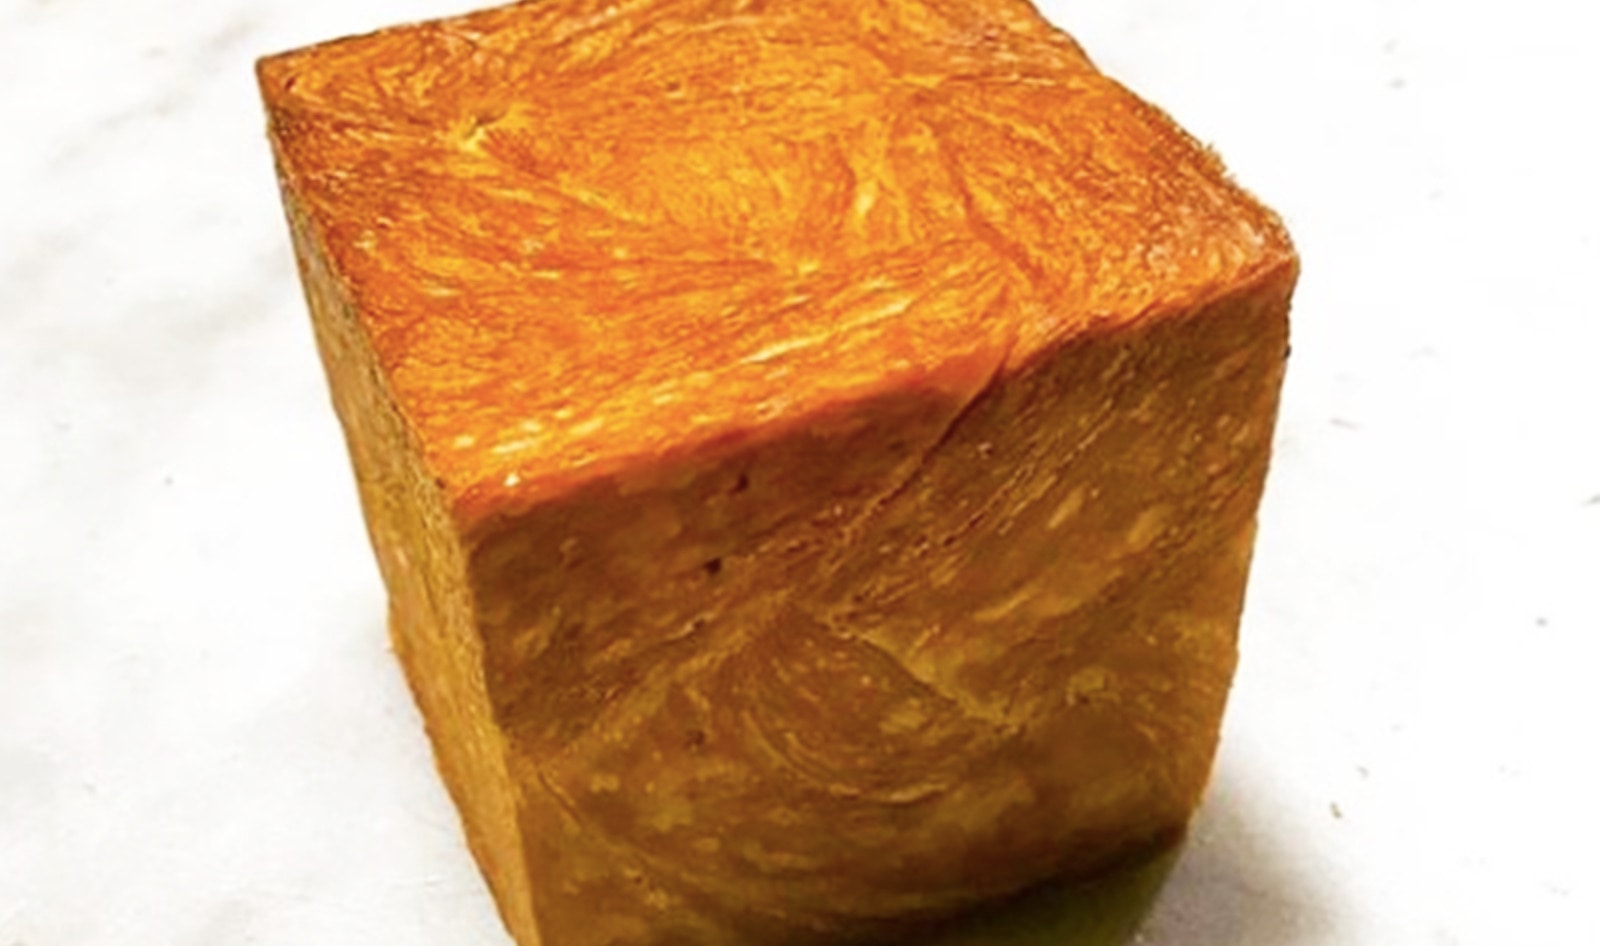 New Aussie Bakery “Weirdoughs” Debuts Vegan Croissant Cubes